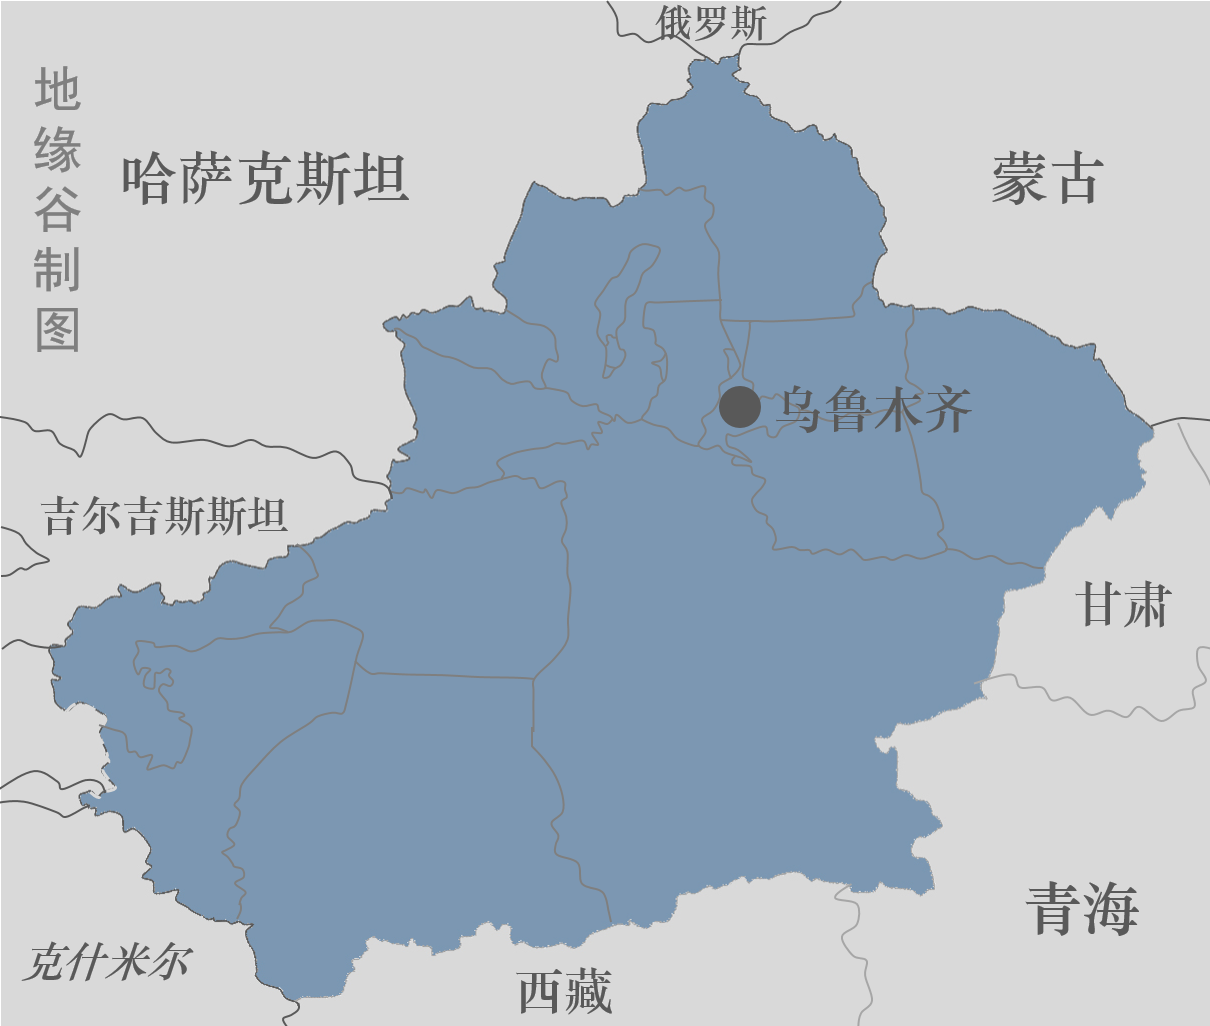 经典 北疆环线 自驾游 （附地图）_搜狐汽车_搜狐网